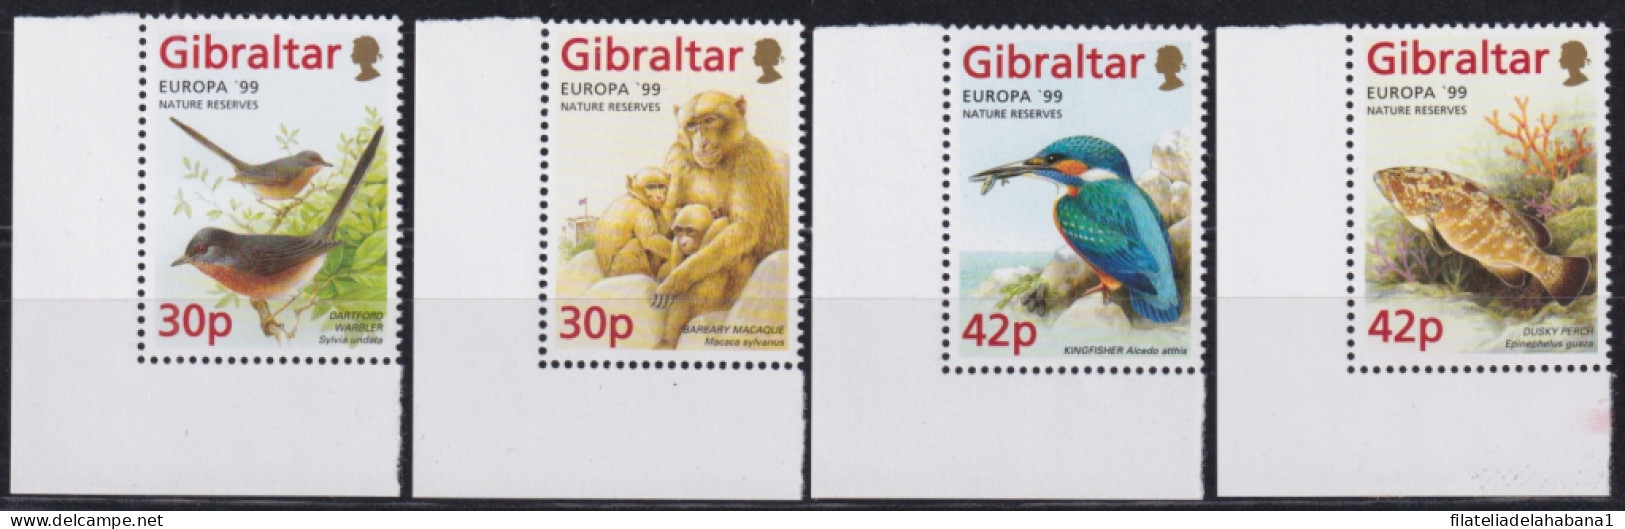 F-EX50154 GIBRALTAR MNH 1999 EUROPE CEPT WILDLIFE BIRD AVES FISH MONKEY & GARDEN.  - Nuevos